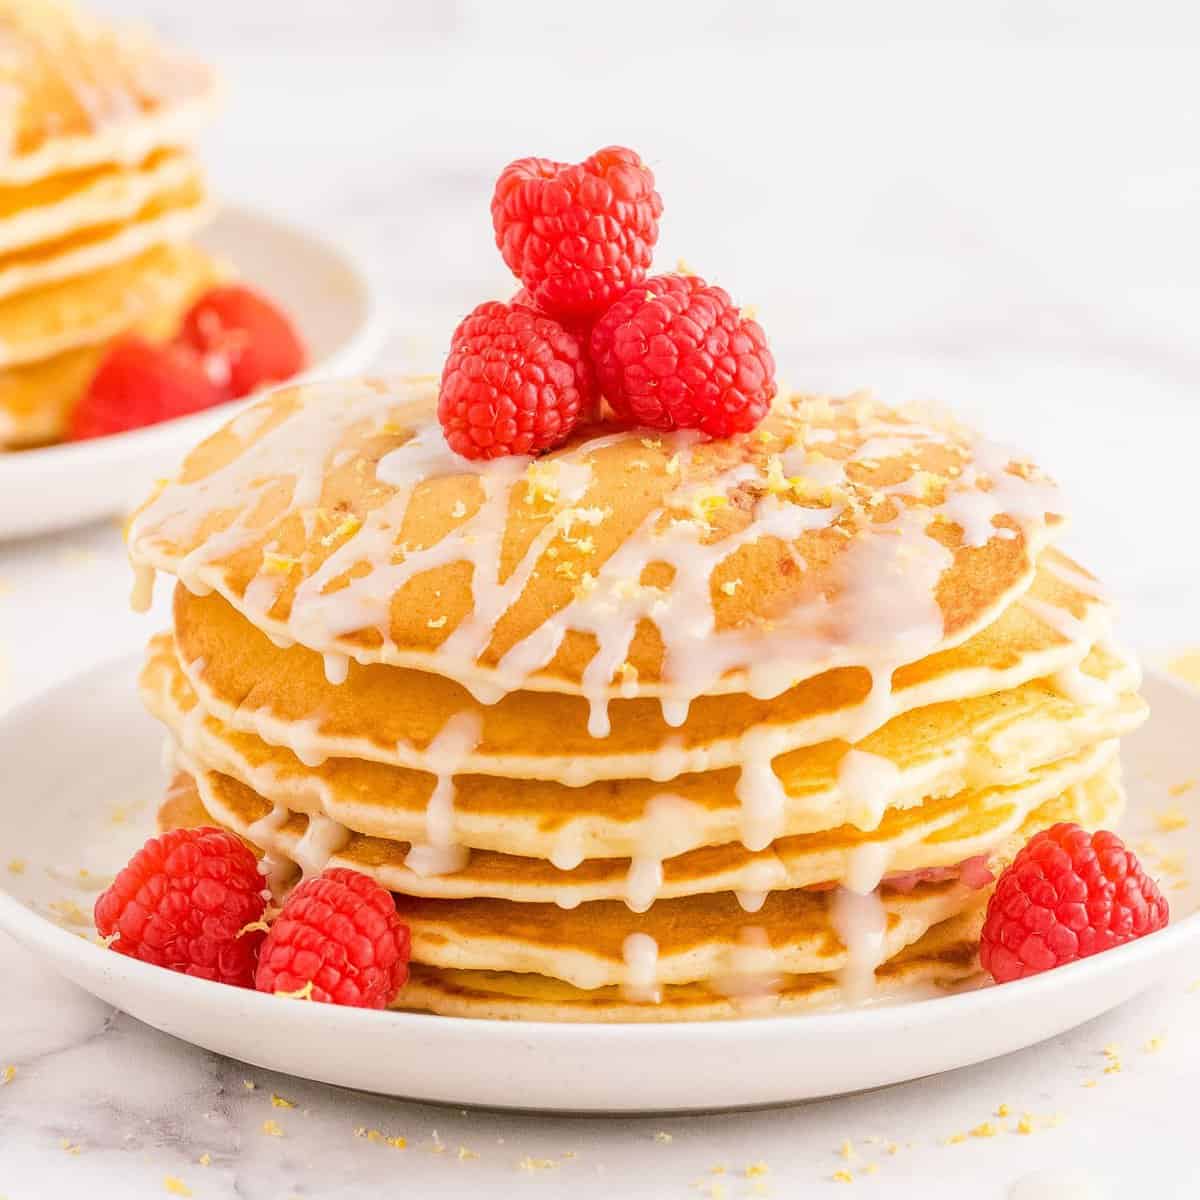 https://pancakerecipes.com/wp-content/uploads/2021/08/lemon-raspberry-pancakes-1500-28-square.jpg